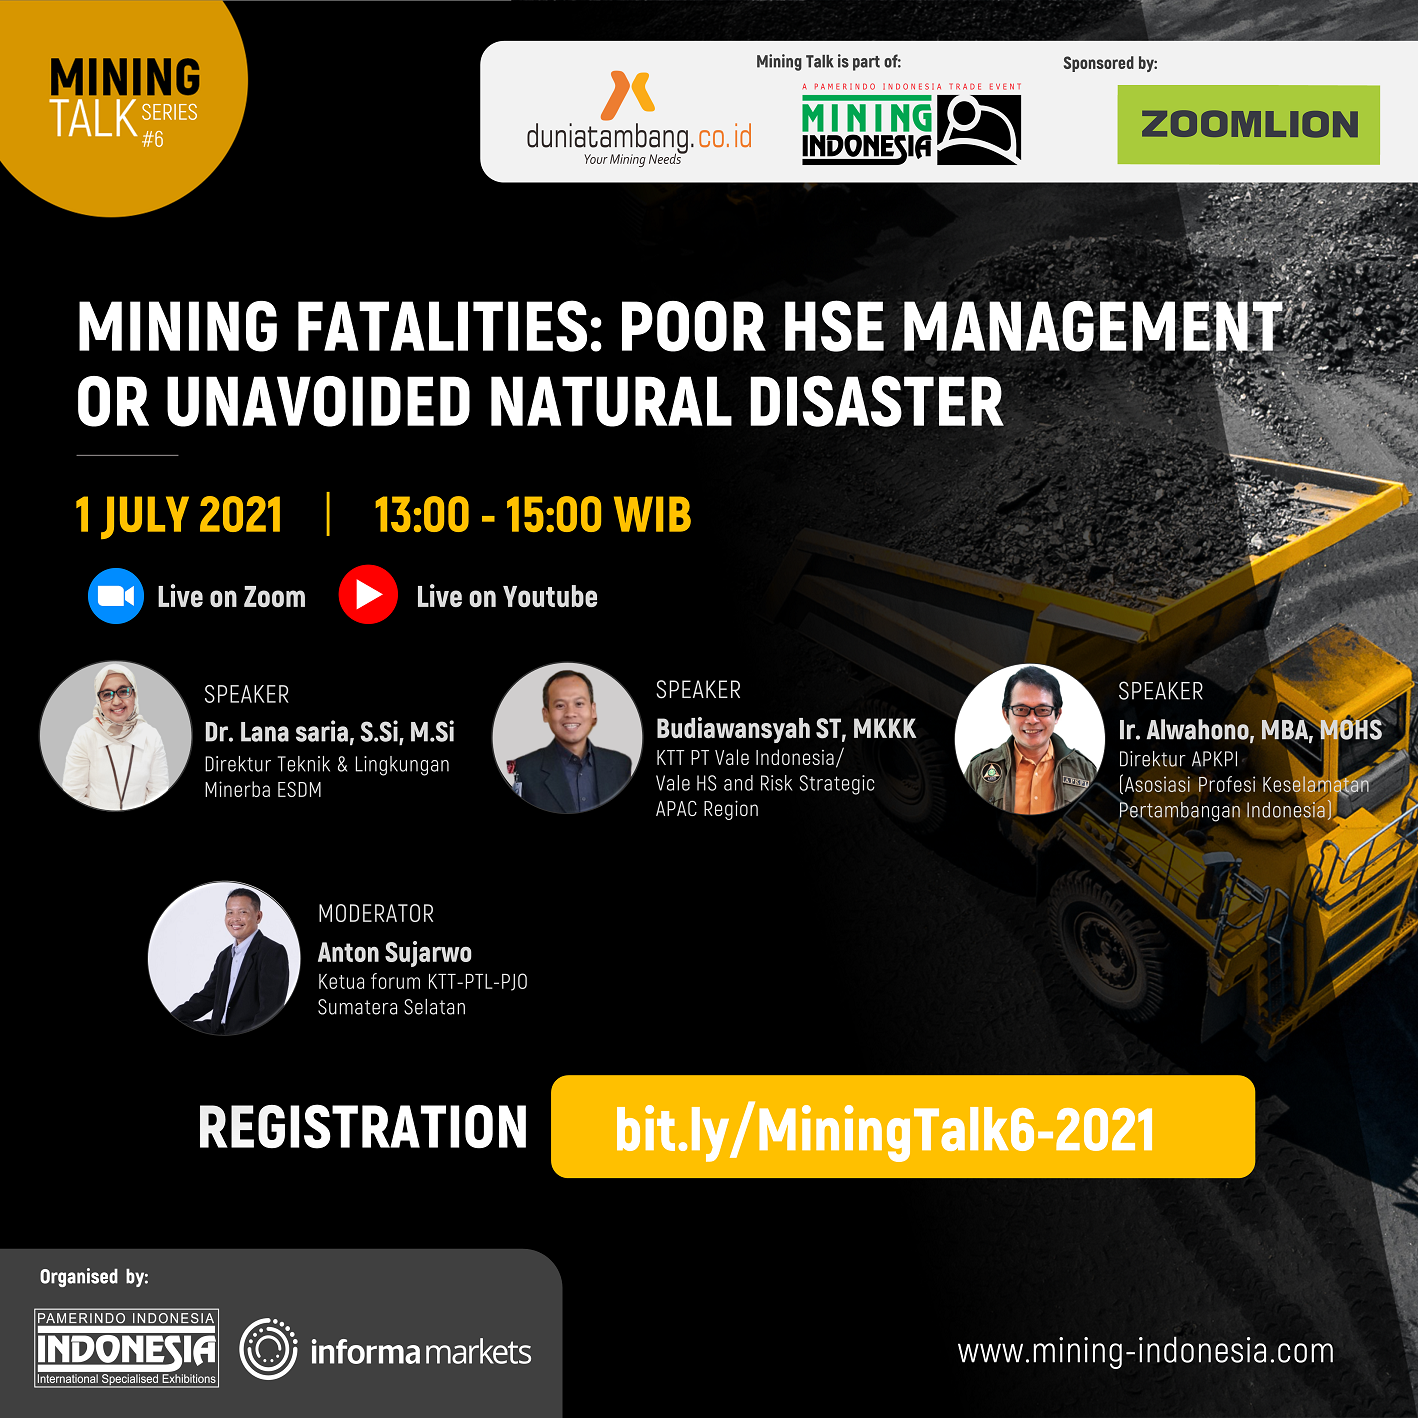 Mining Talk #6 with Dunia Tambang